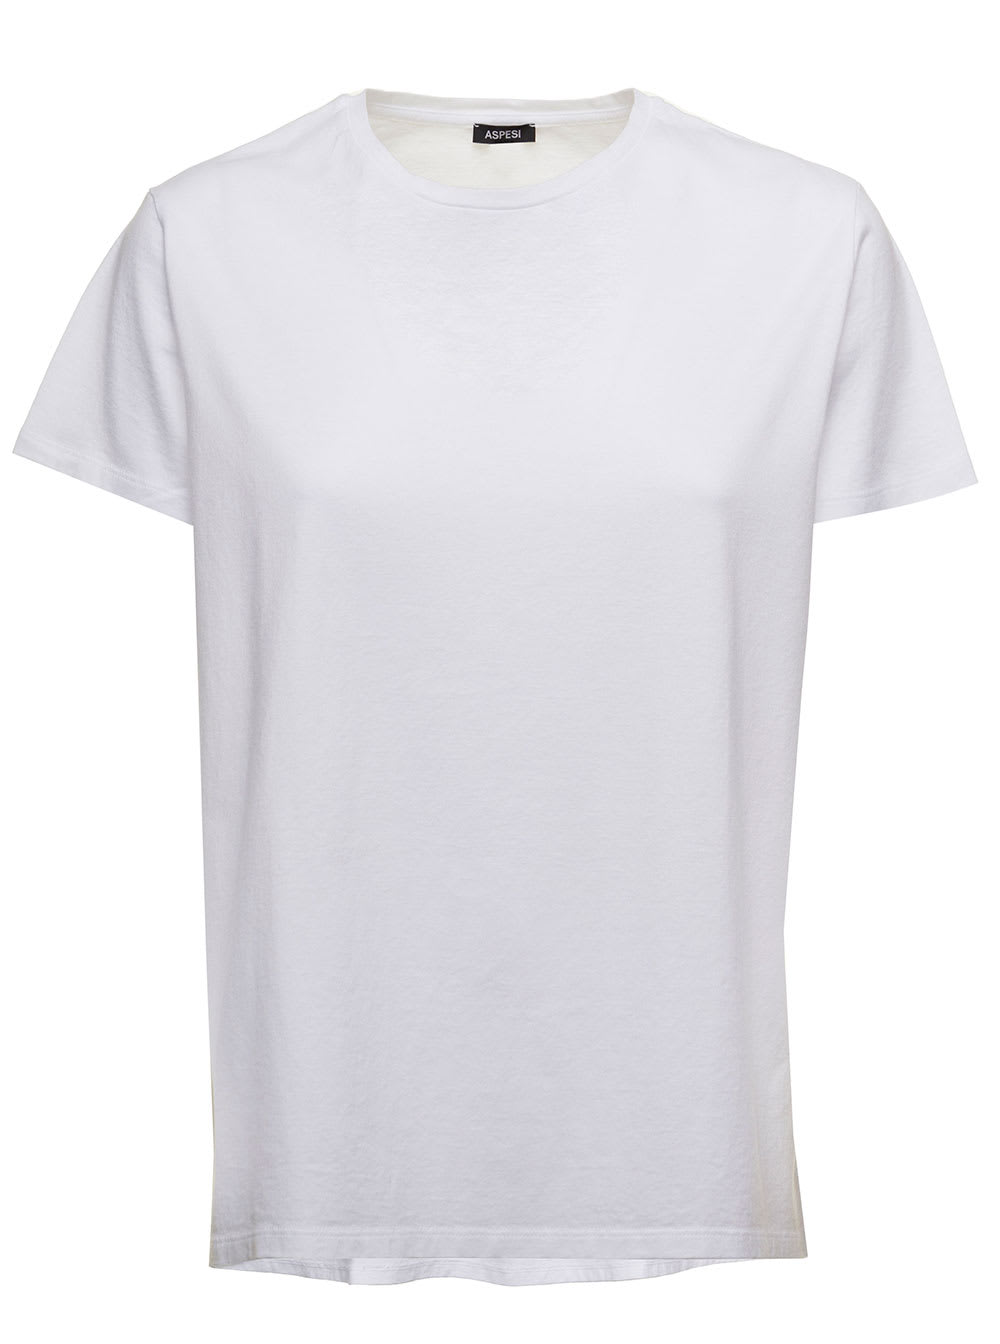 Aspesi Womens Basic White Cotton T-shirt